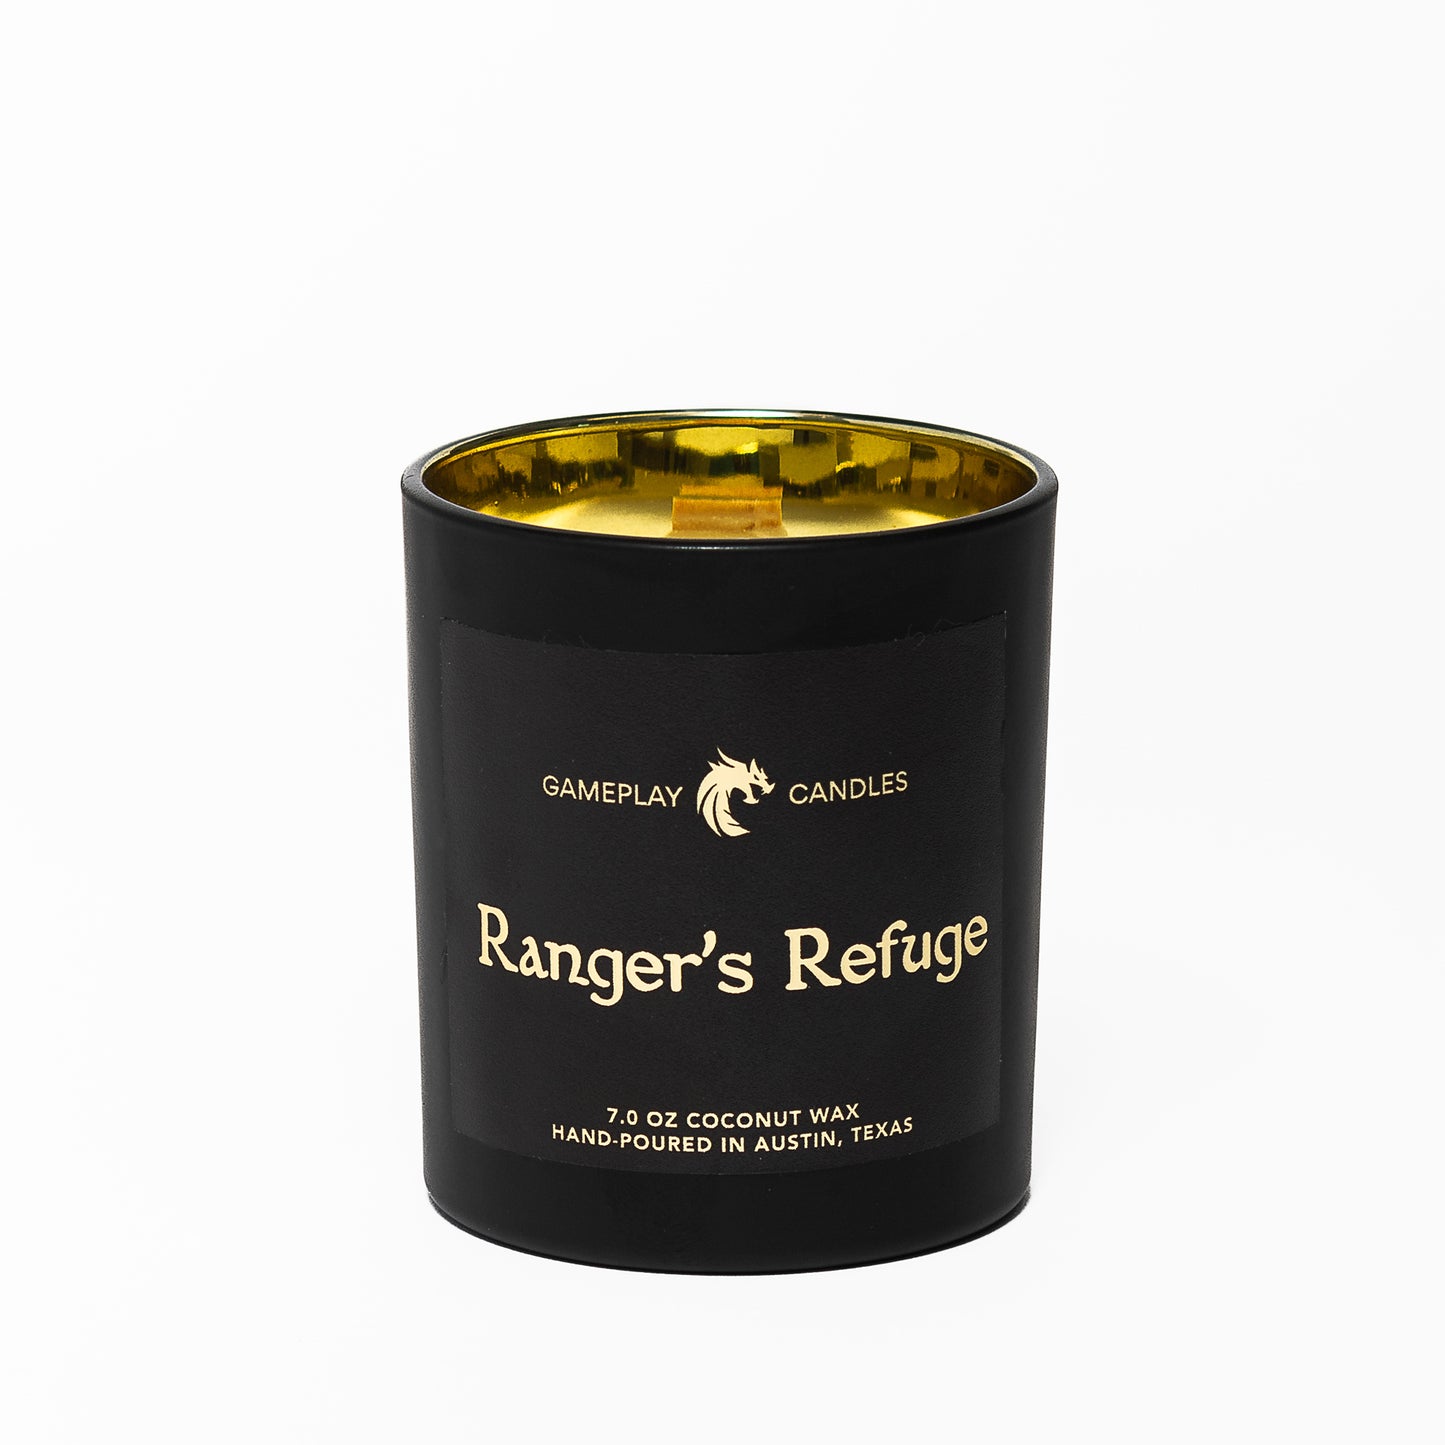 Ranger's Refuge